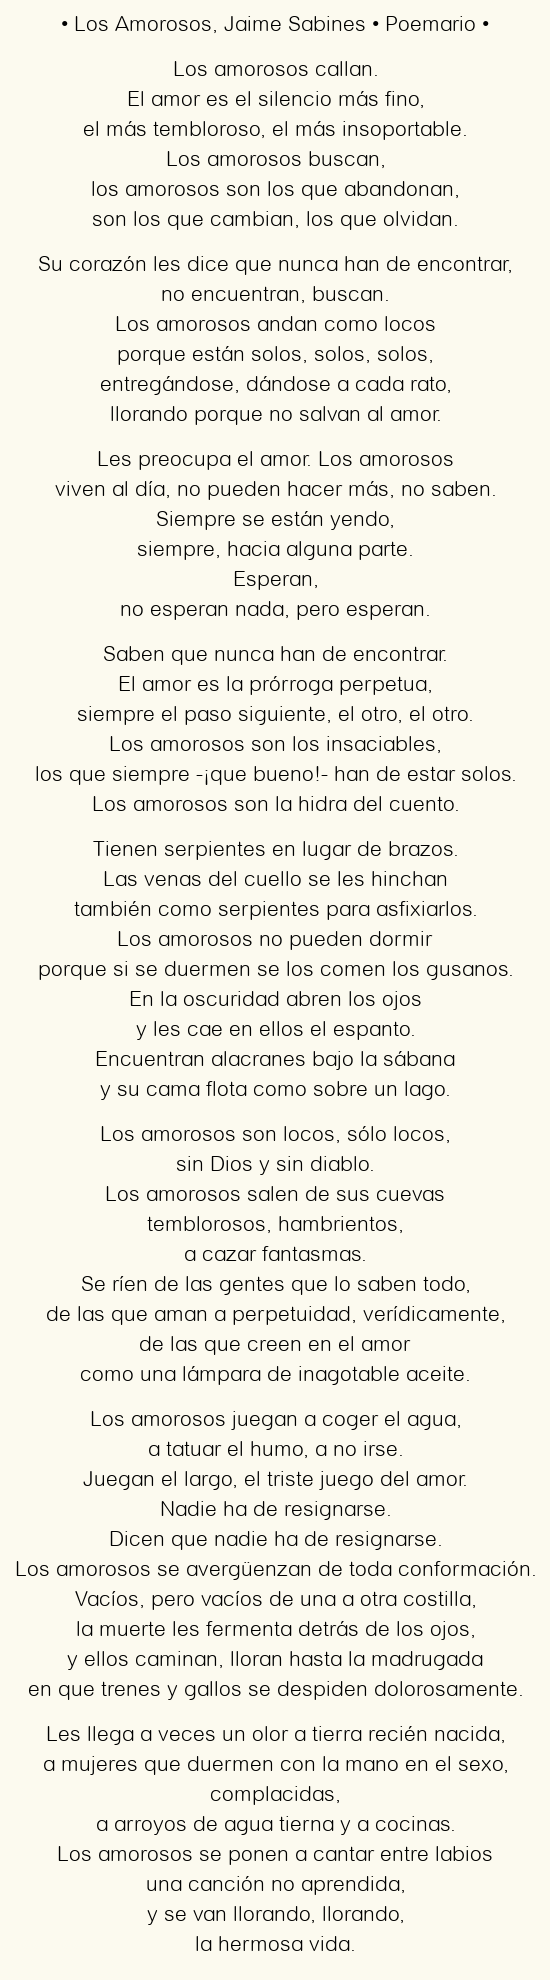 El Poema de los Amorosos: Una oda a la pasión y el deseo en la poesía española